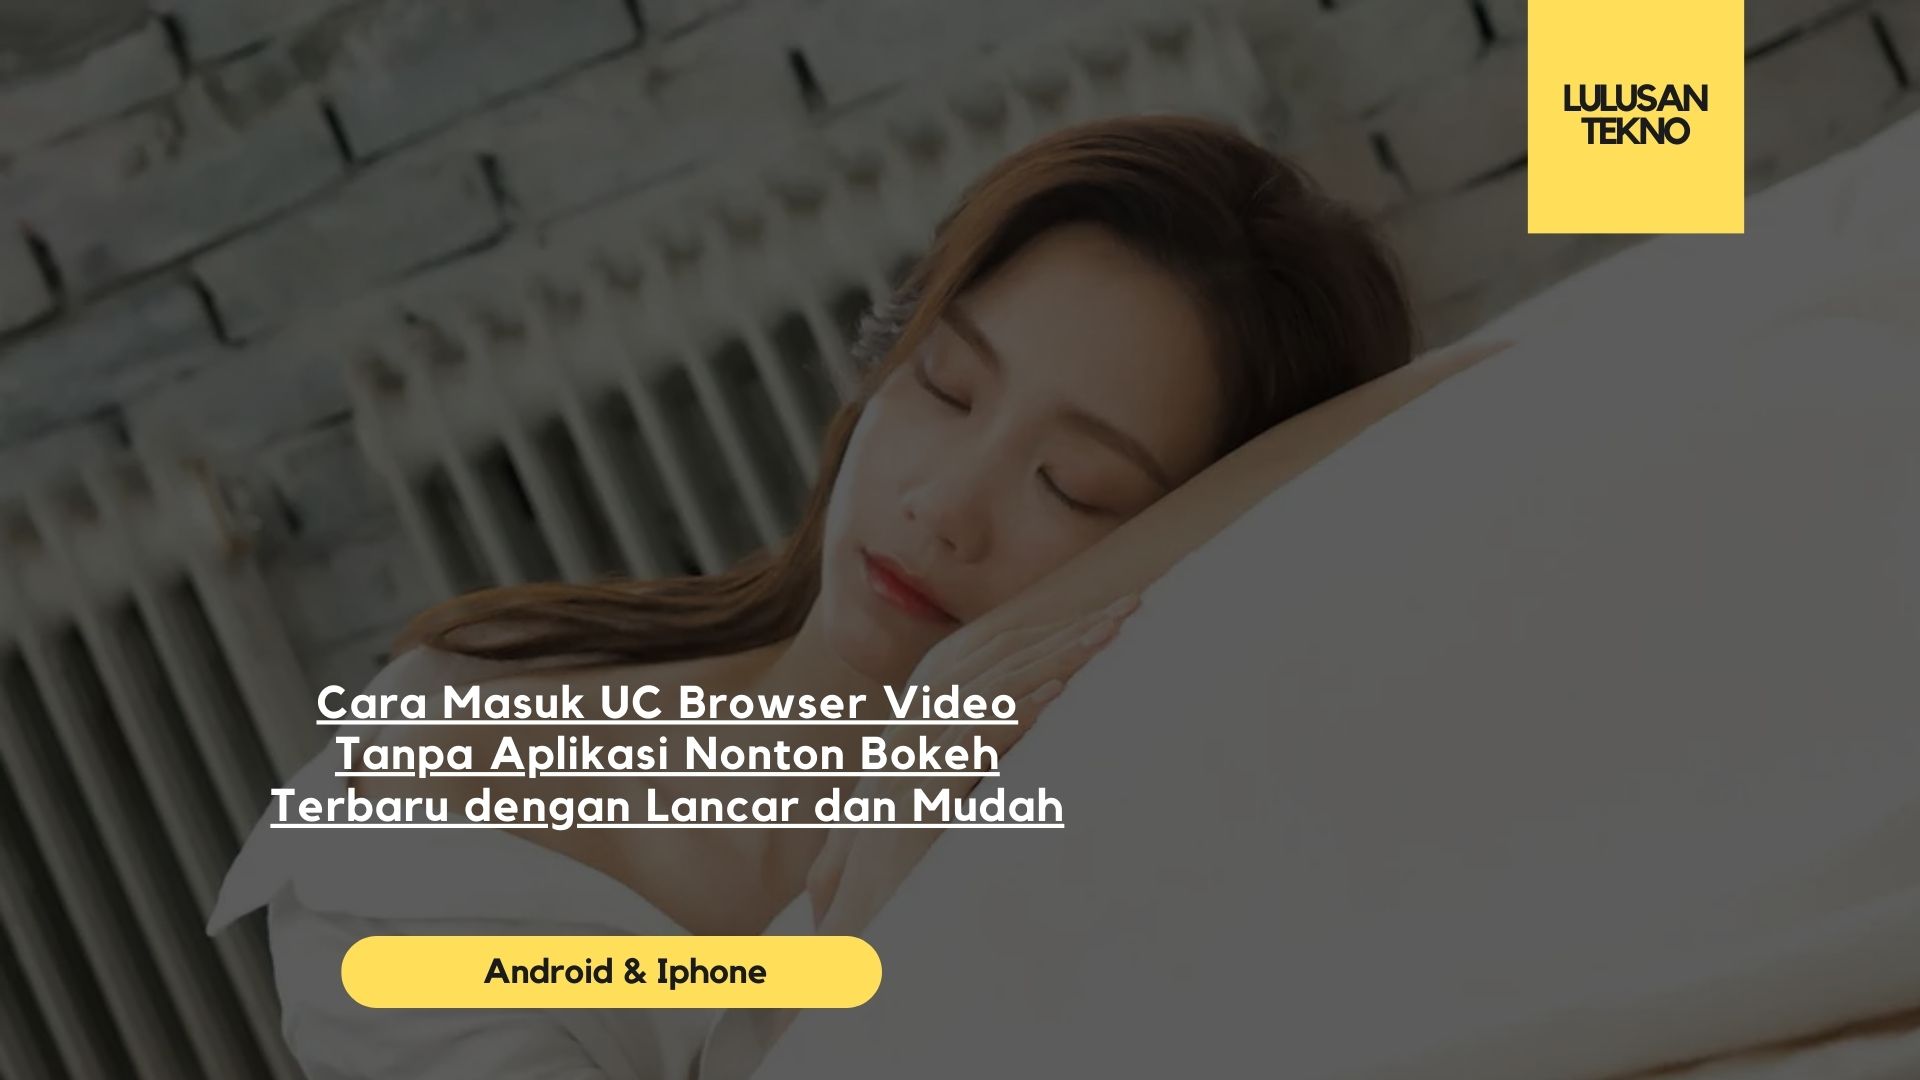 Cara Masuk UC Browser Video Tanpa Aplikasi Nonton Bokeh Terbaru dengan Lancar dan Mudah